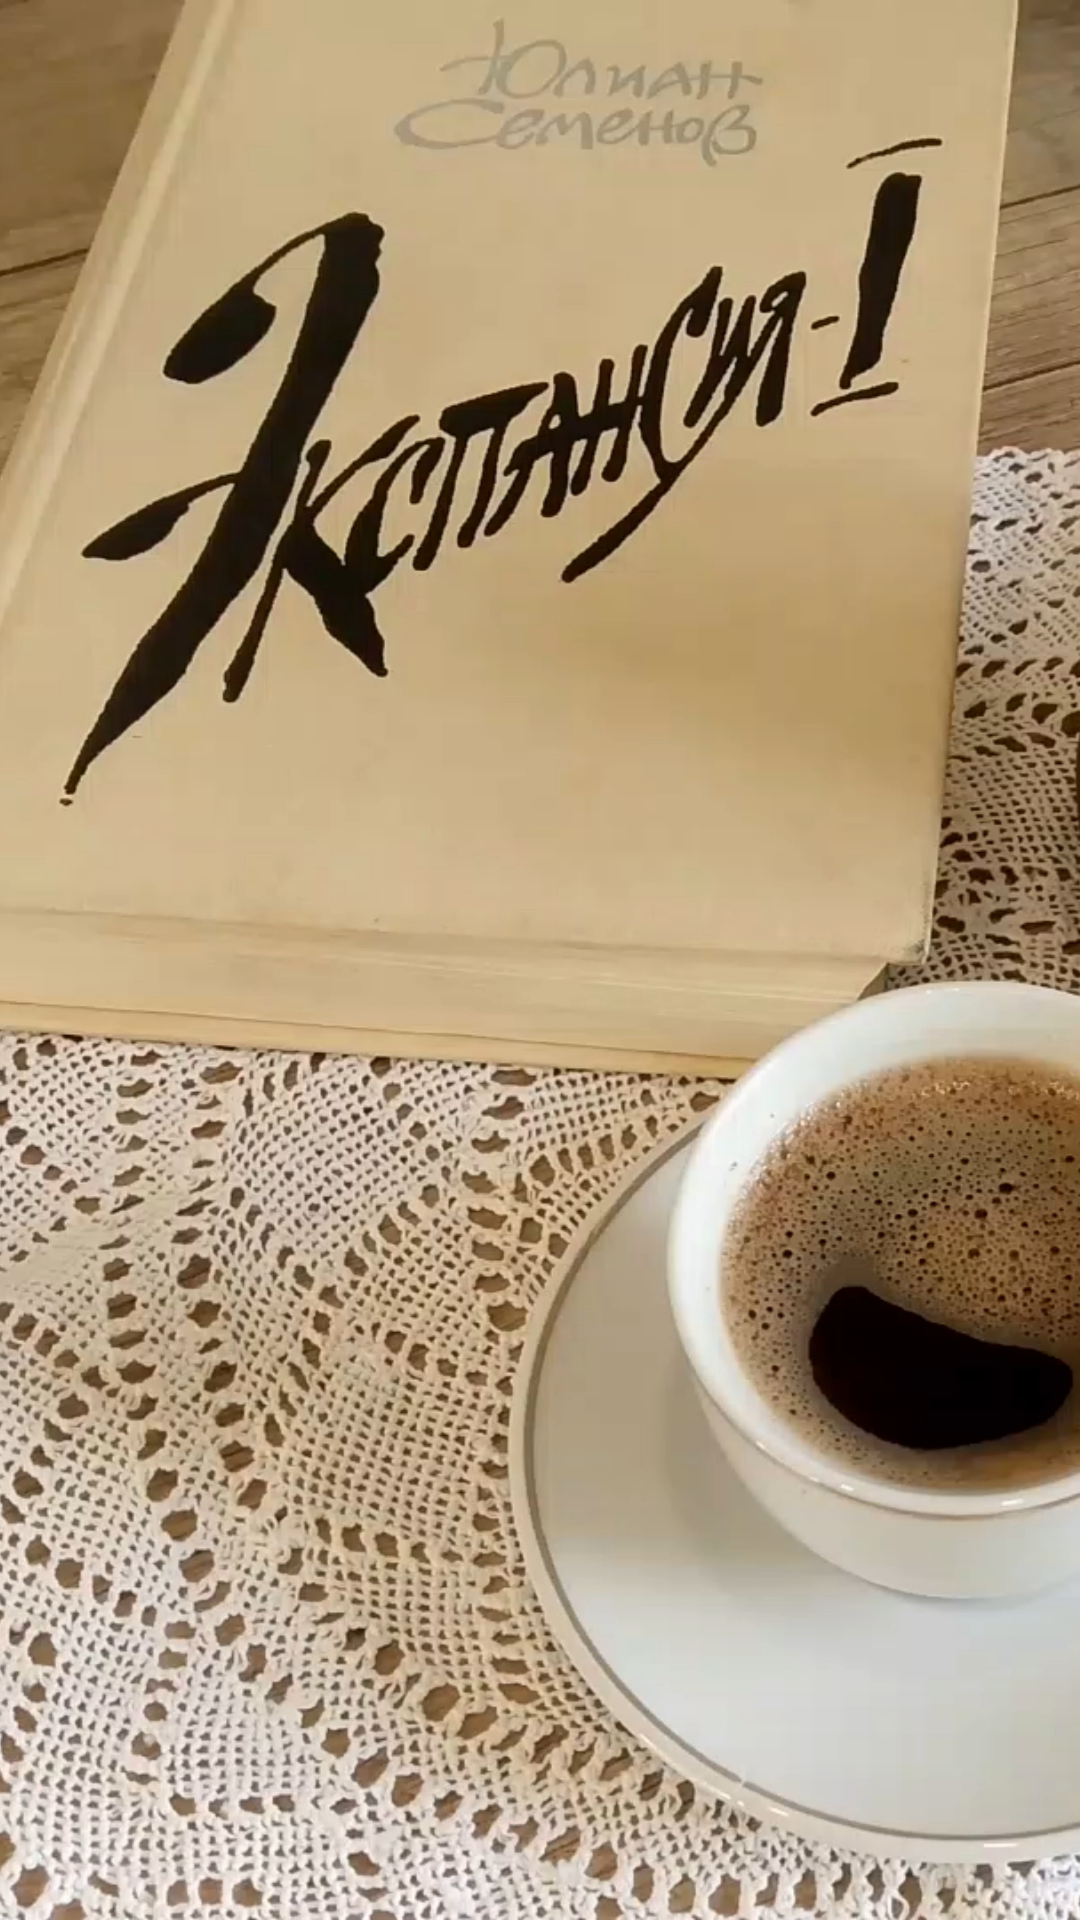 Рецепт кофе из книги Юлиана Семенова  "Экспансия"